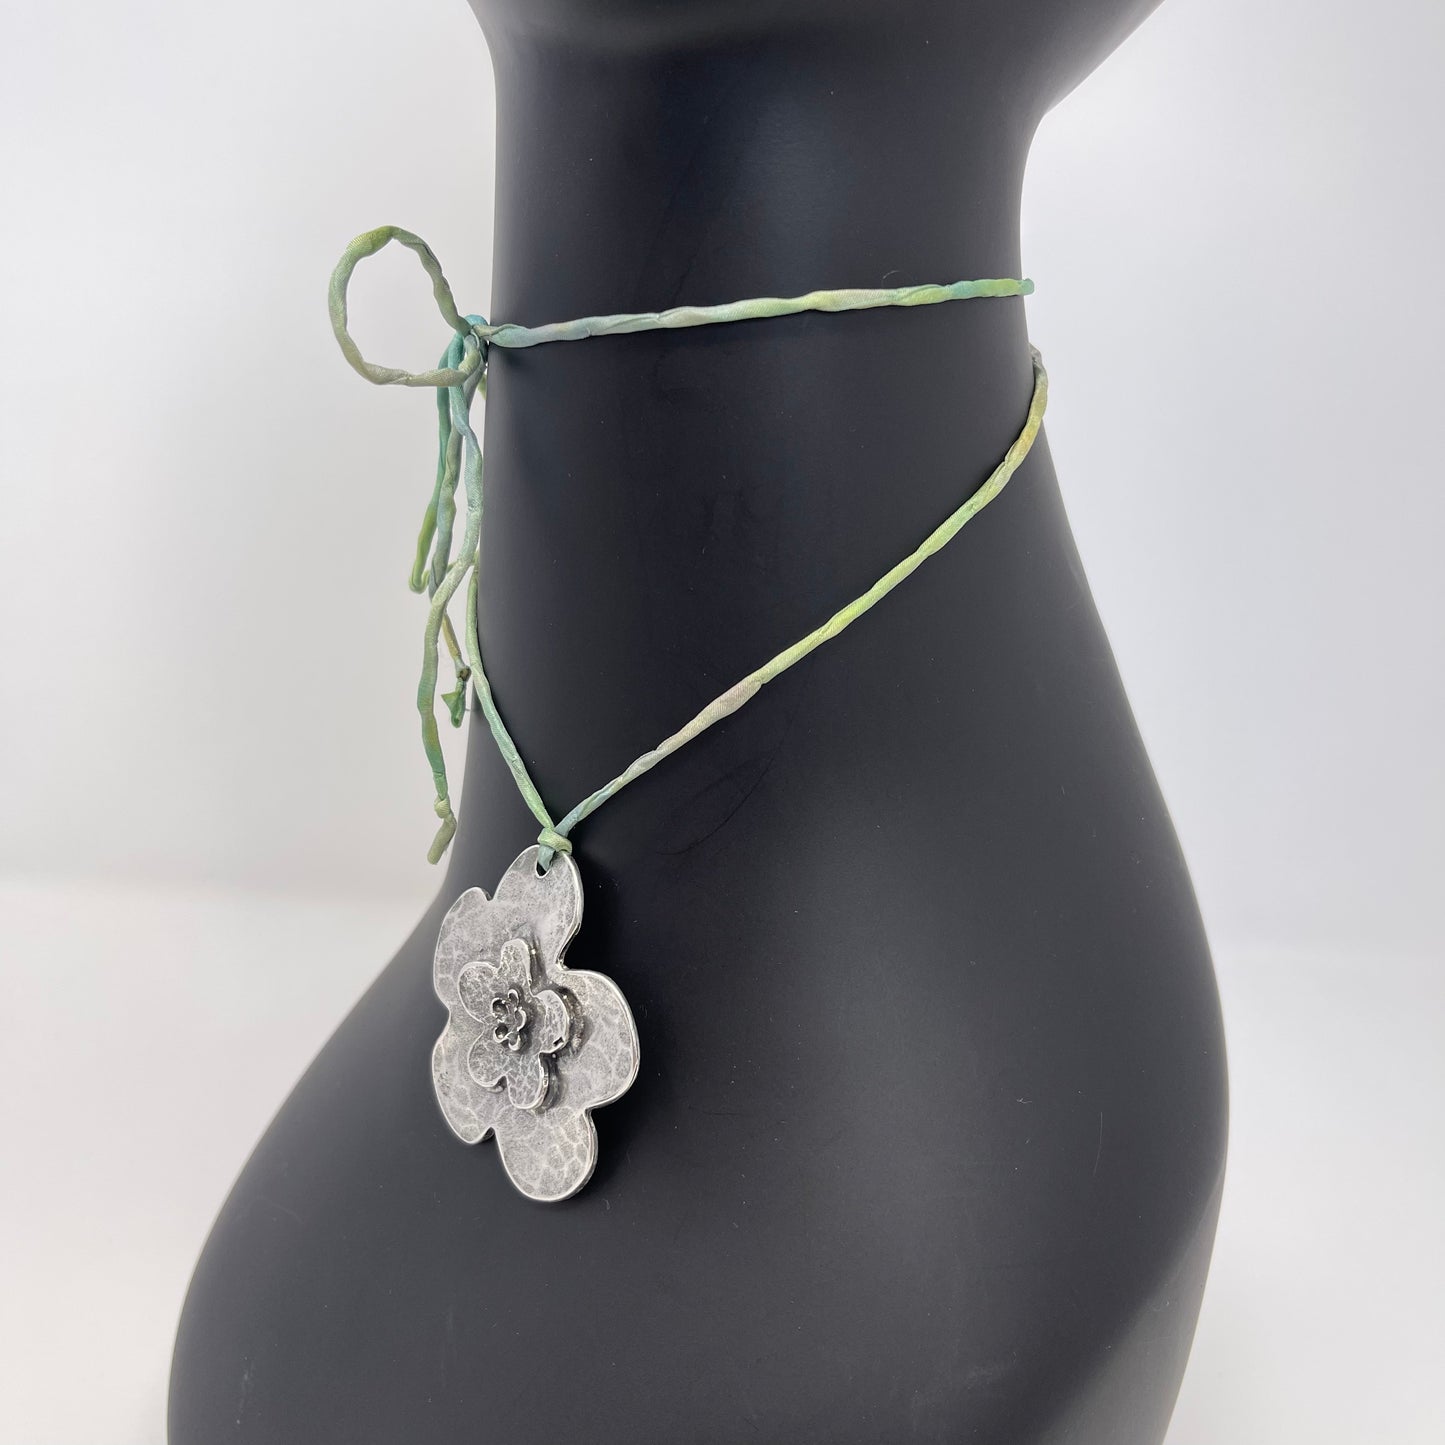 Silver Flower Pendant Necklace - Tie-dye Green